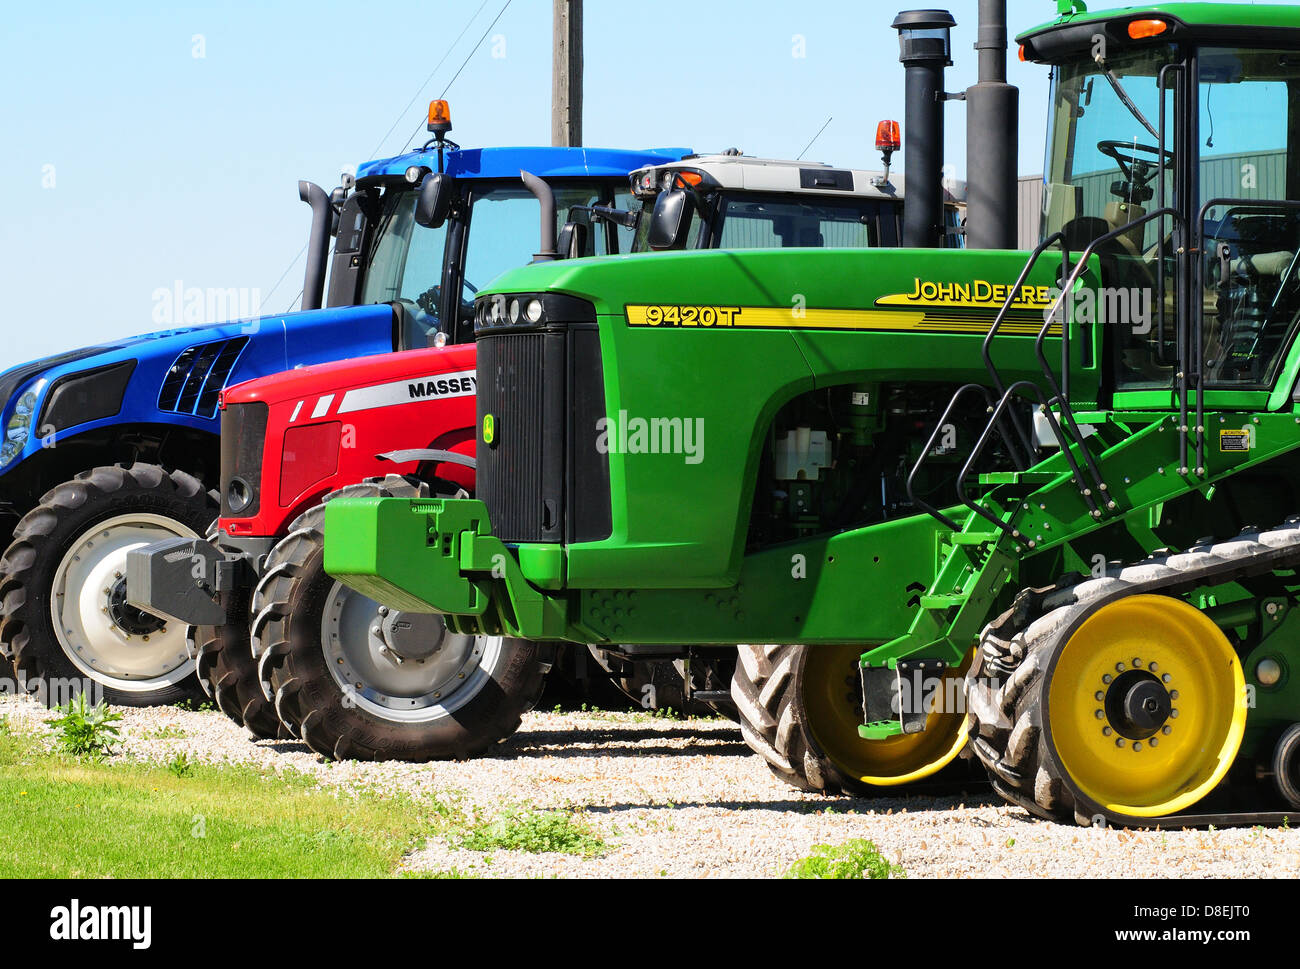 drei landwirtschaftliche Traktoren von John Deere, Massey Ferguson, New  Holland gemacht Stockfotografie - Alamy